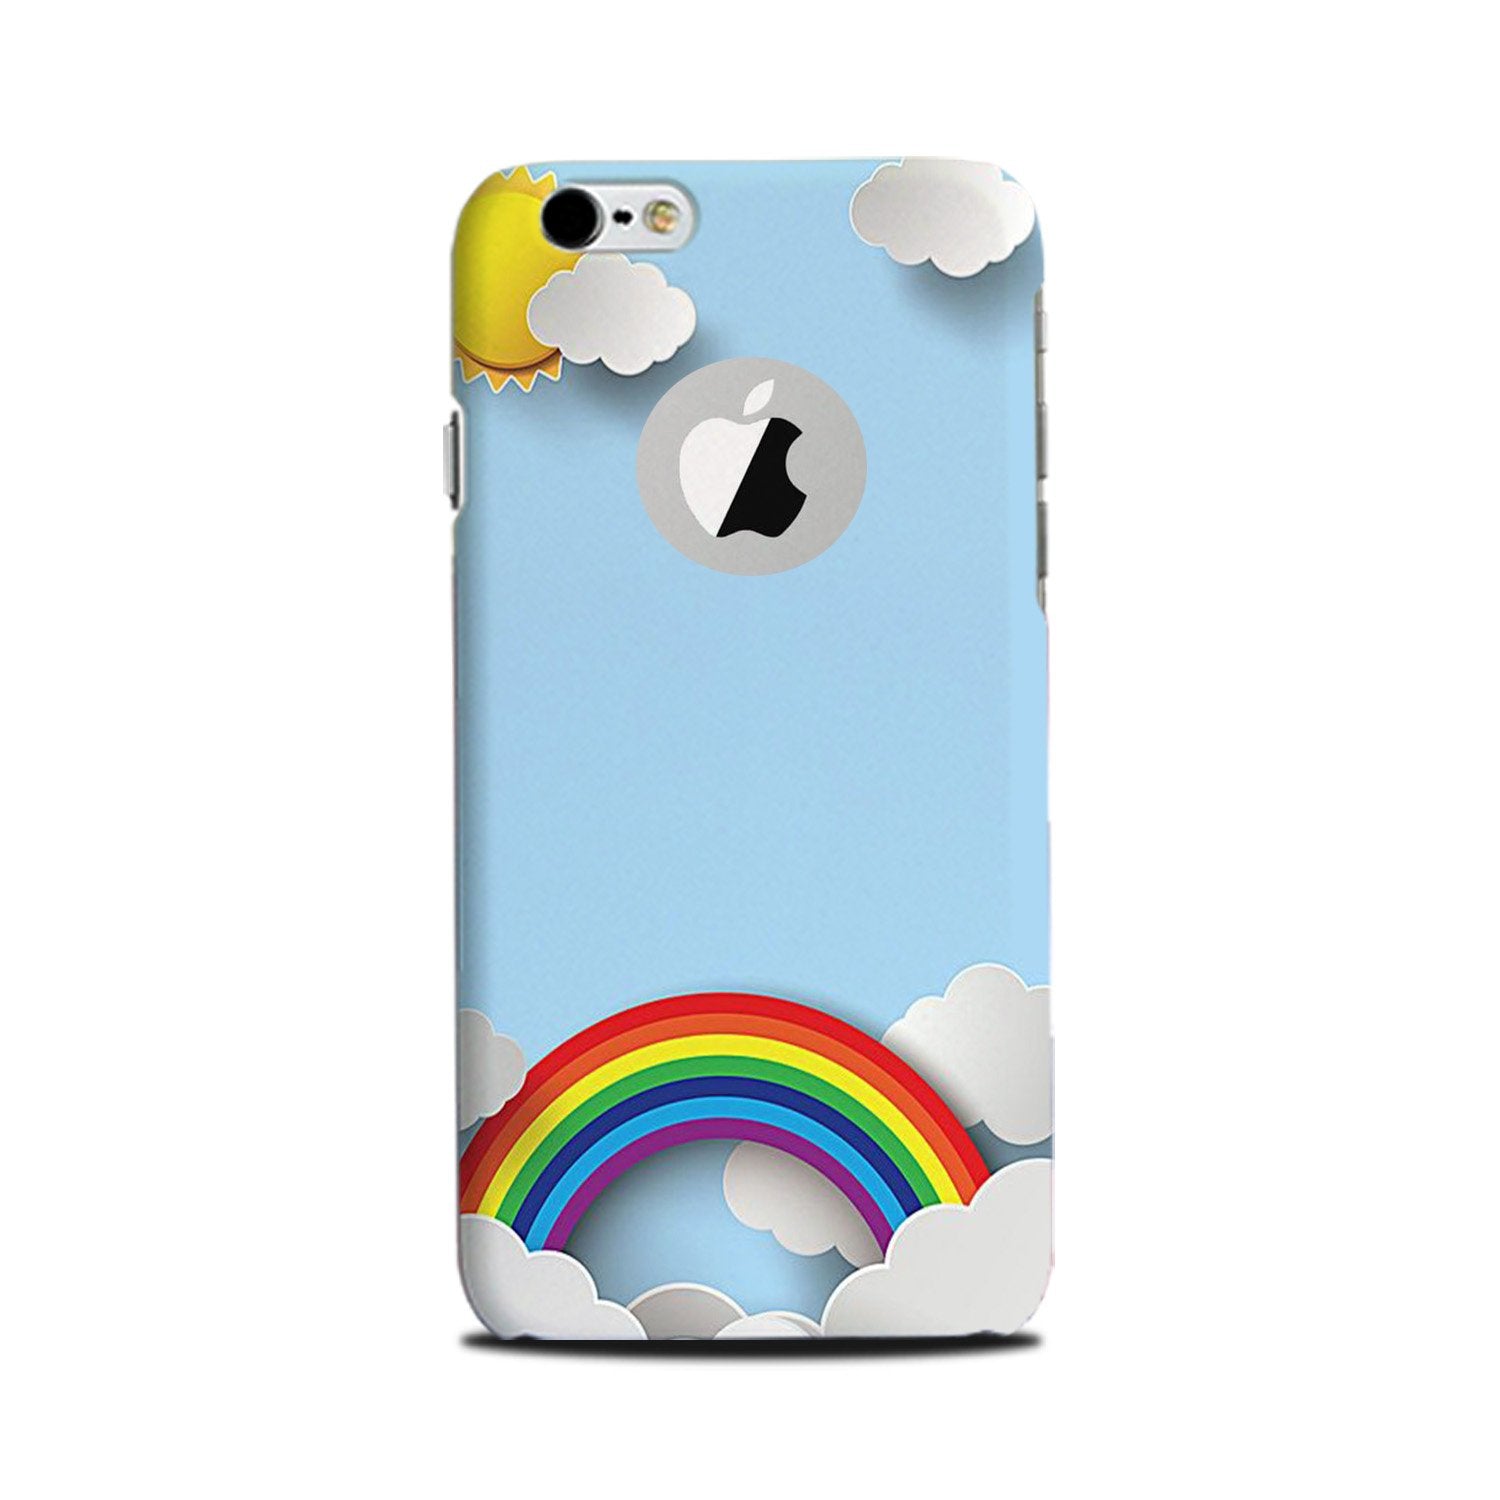 Rainbow Case for iPhone 6 Plus / 6s Plus logo cut(Design No. 225)